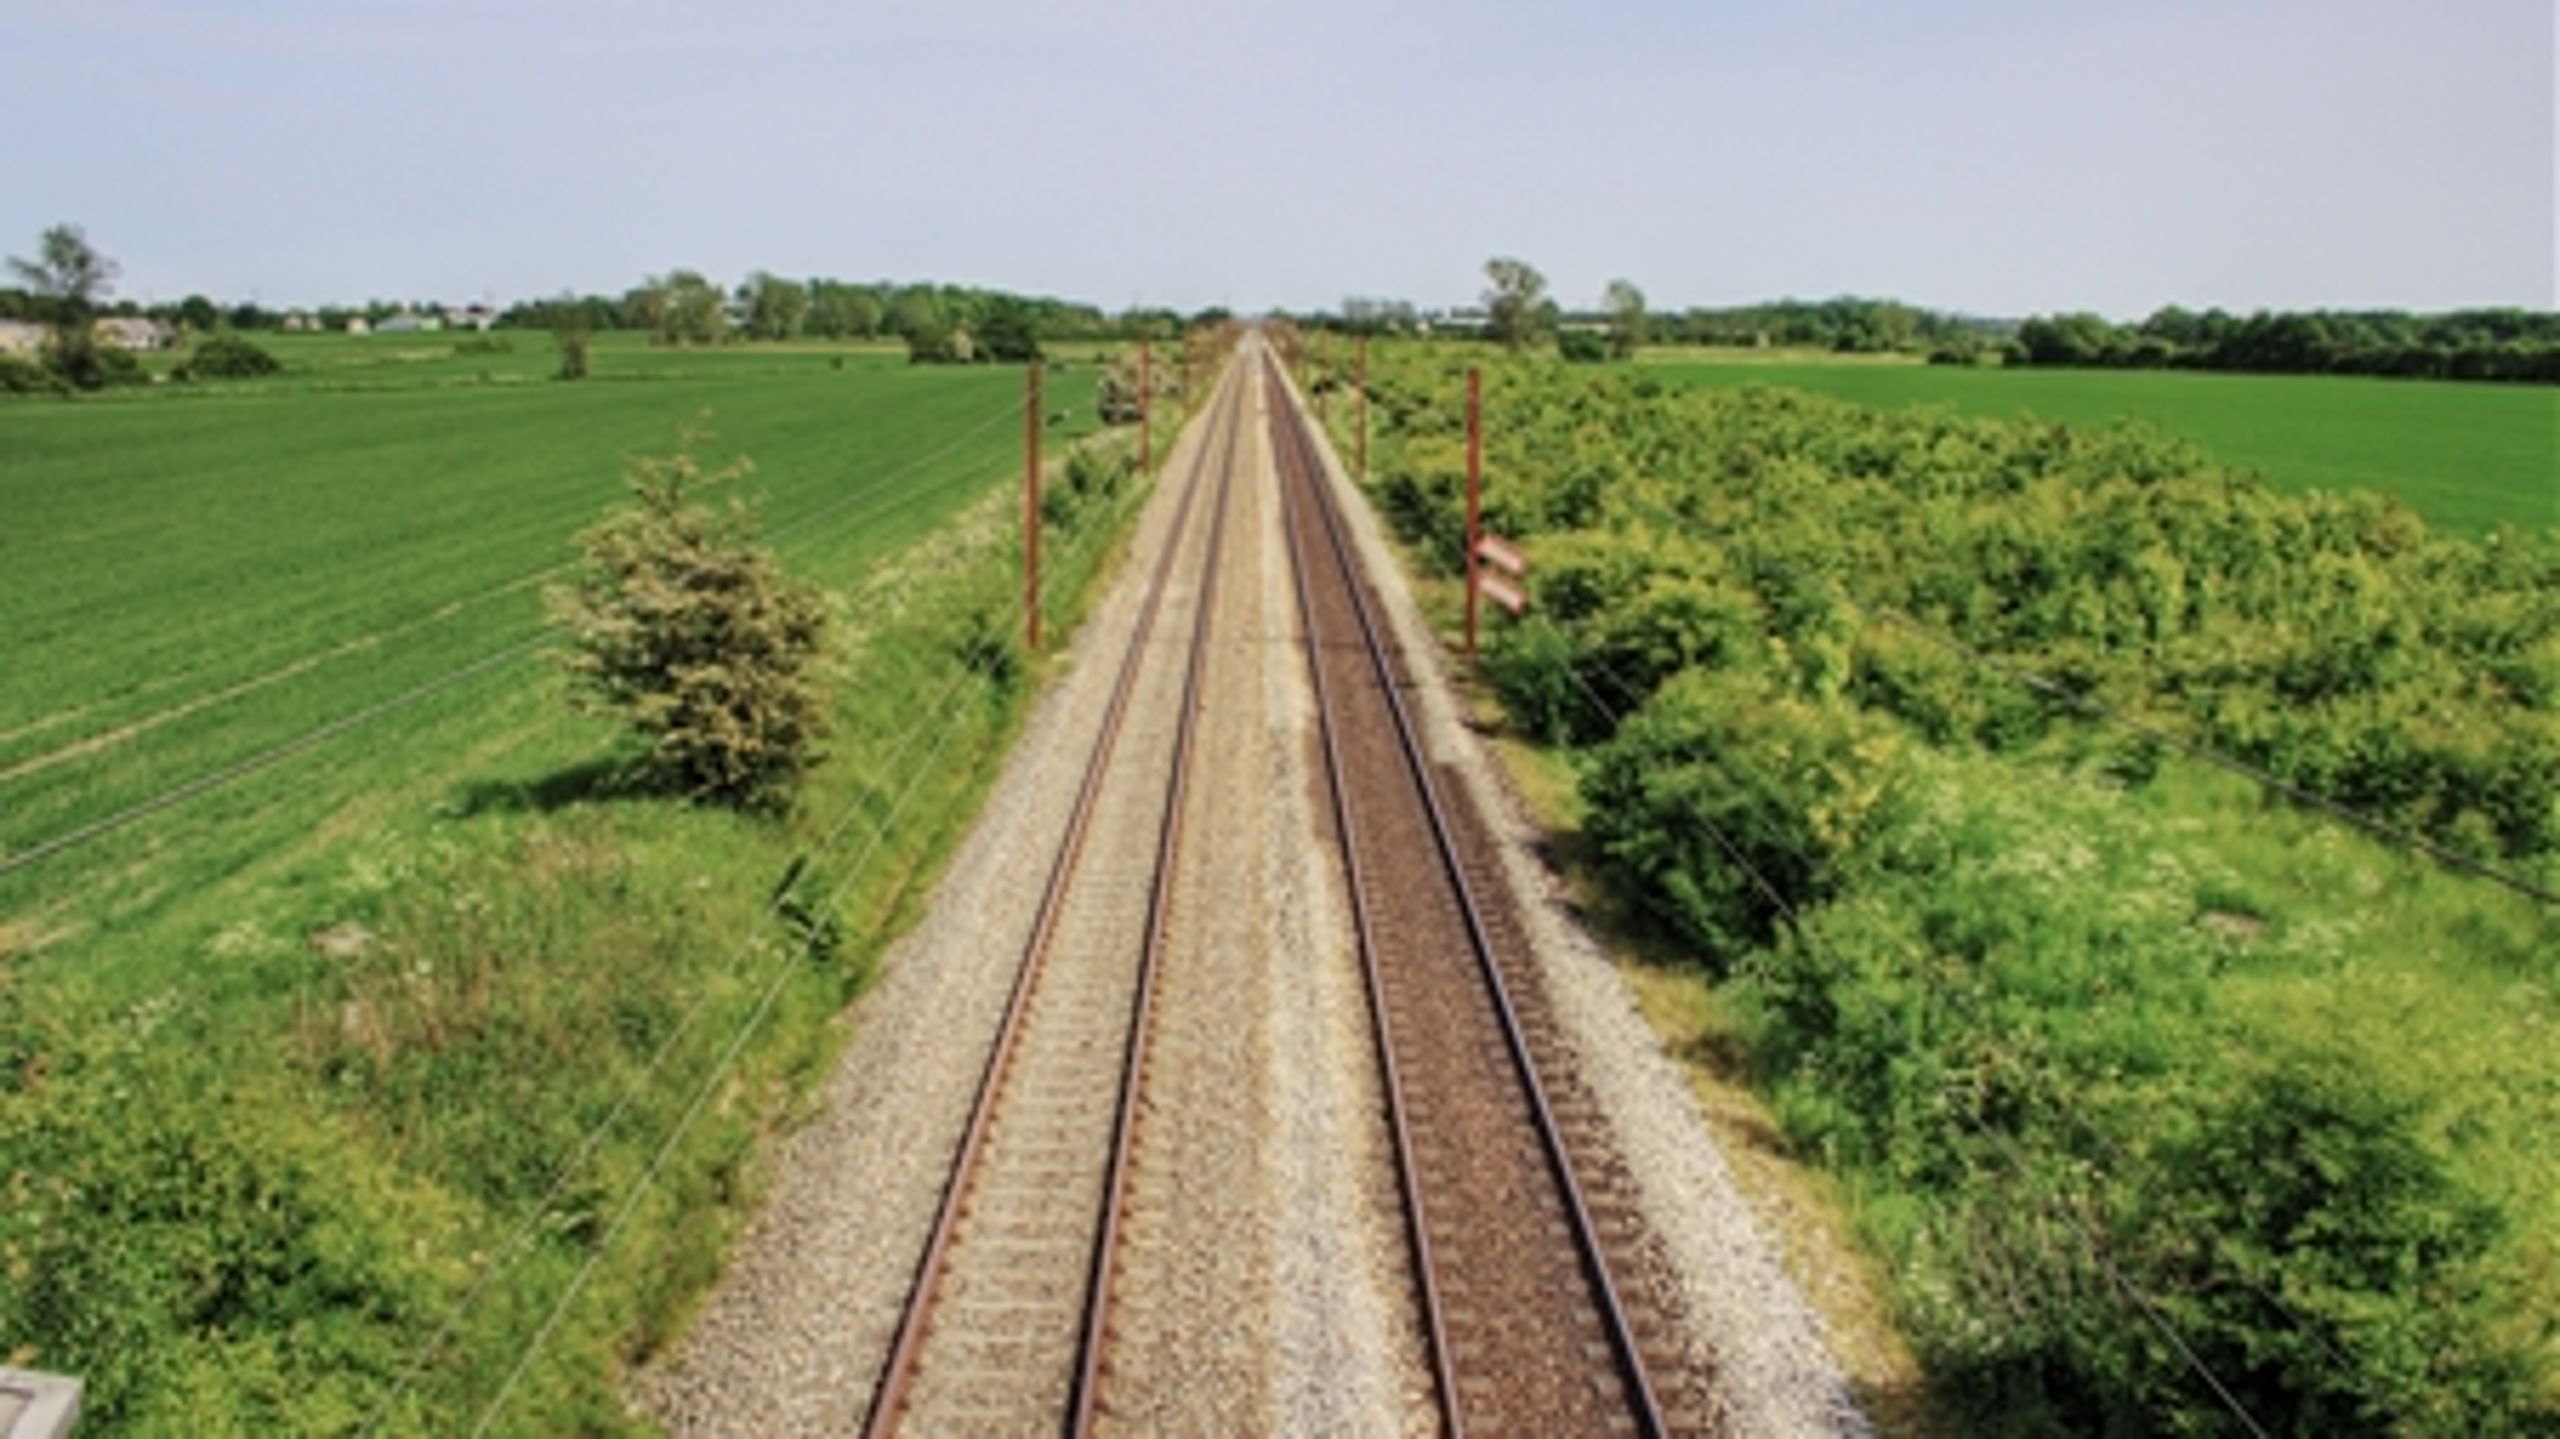 Regeringen, DF og EL er nu blevet enige om finansieringen af Togfonden DK, der skal elektrificere jernbanenettet og skabe hurtigere togforbindelser i Danmark.